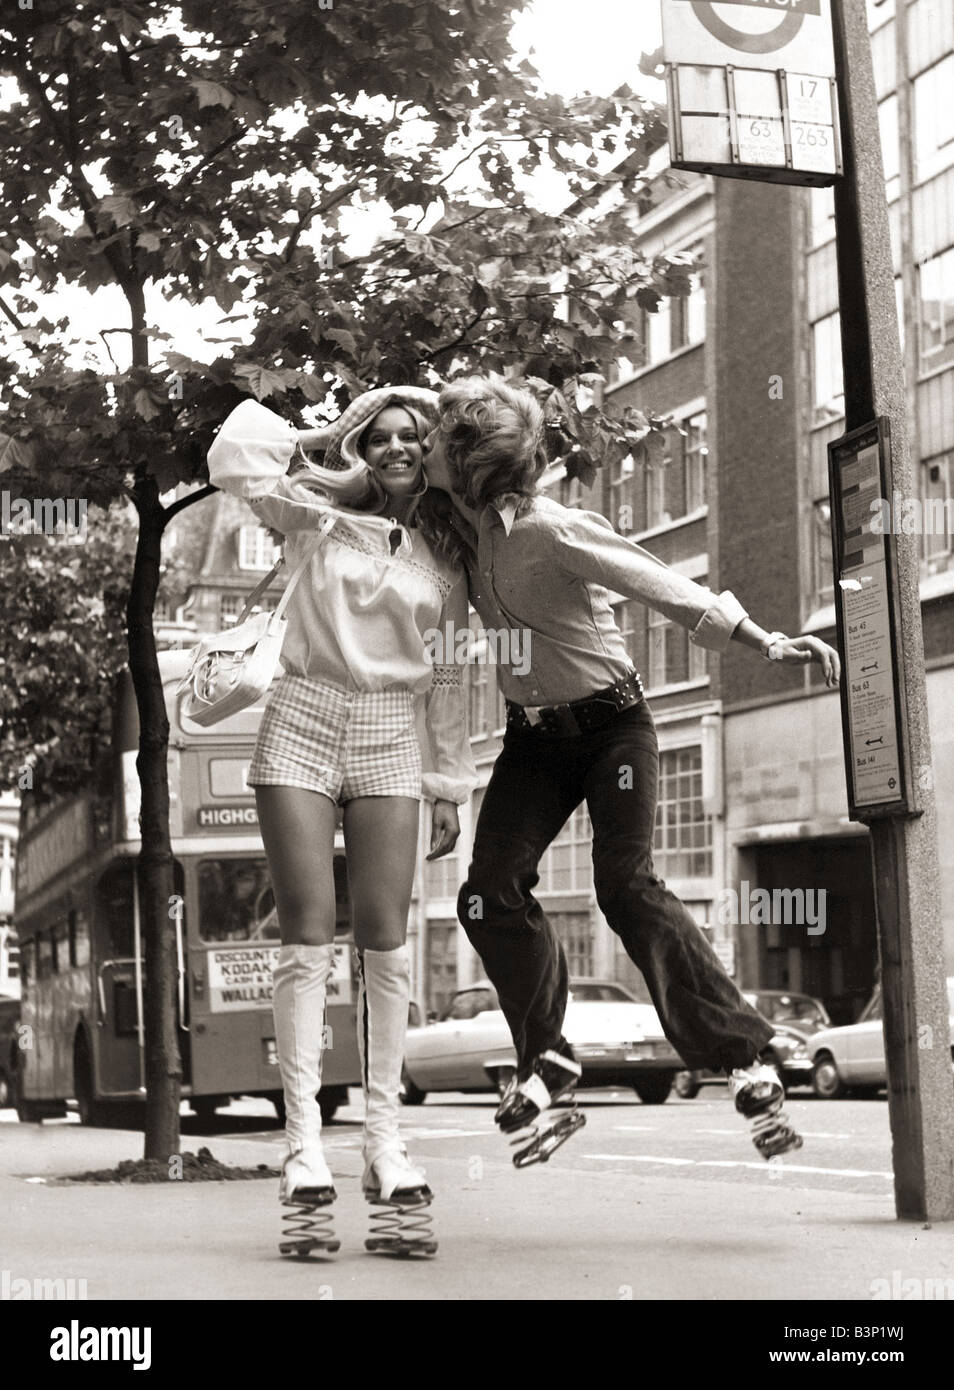 Nigel Lythgoe abgebildet in 1971 küssen ein Mädchen Heather Berkers mit Federn auf seine Schuhe beim warten an einer Bushaltestelle Juli 1971 Stockfoto